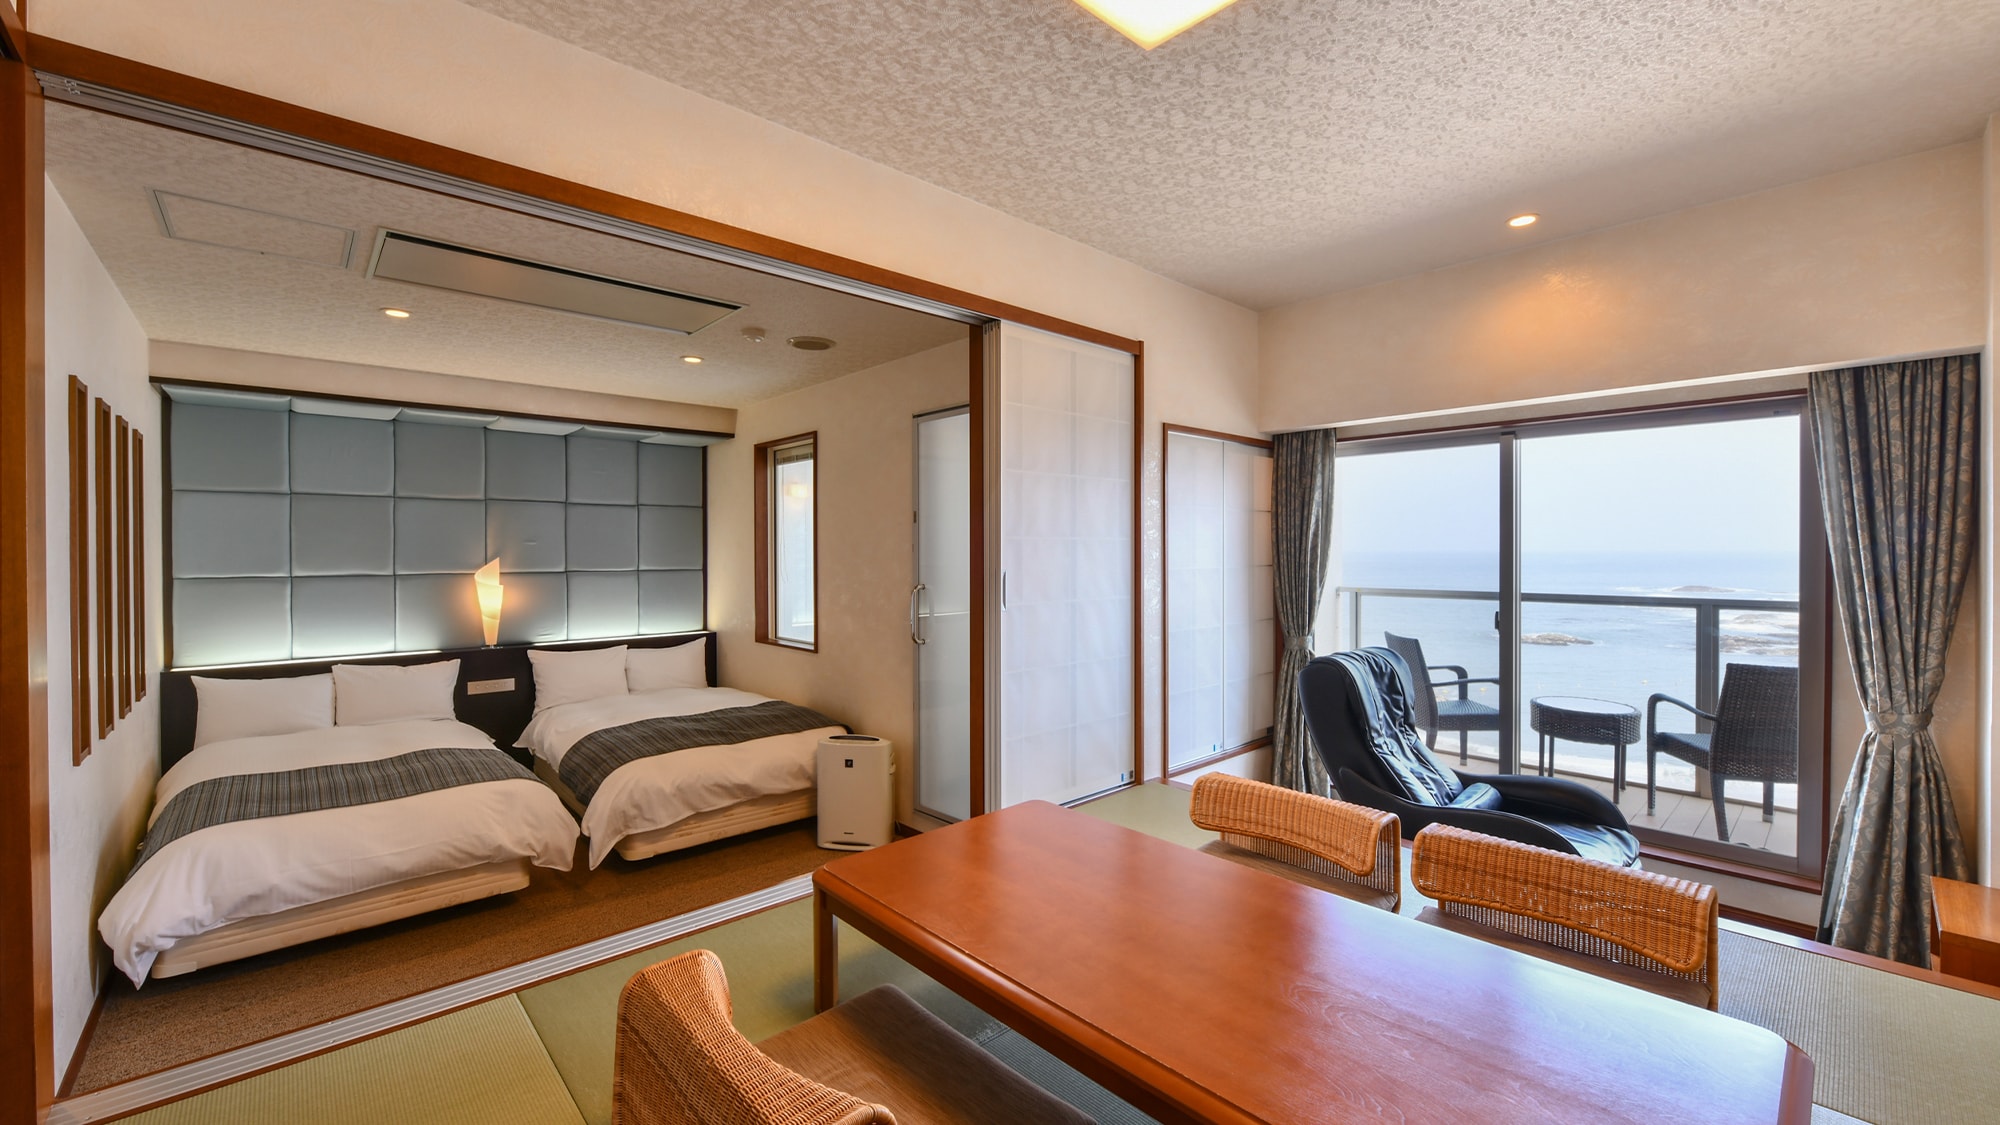 West Building Premium Room รีสอร์ทสไตล์ญี่ปุ่น <พร้อมอ่างอาบน้ำกึ่งเปิดโล่งพร้อมวิวทะเล>